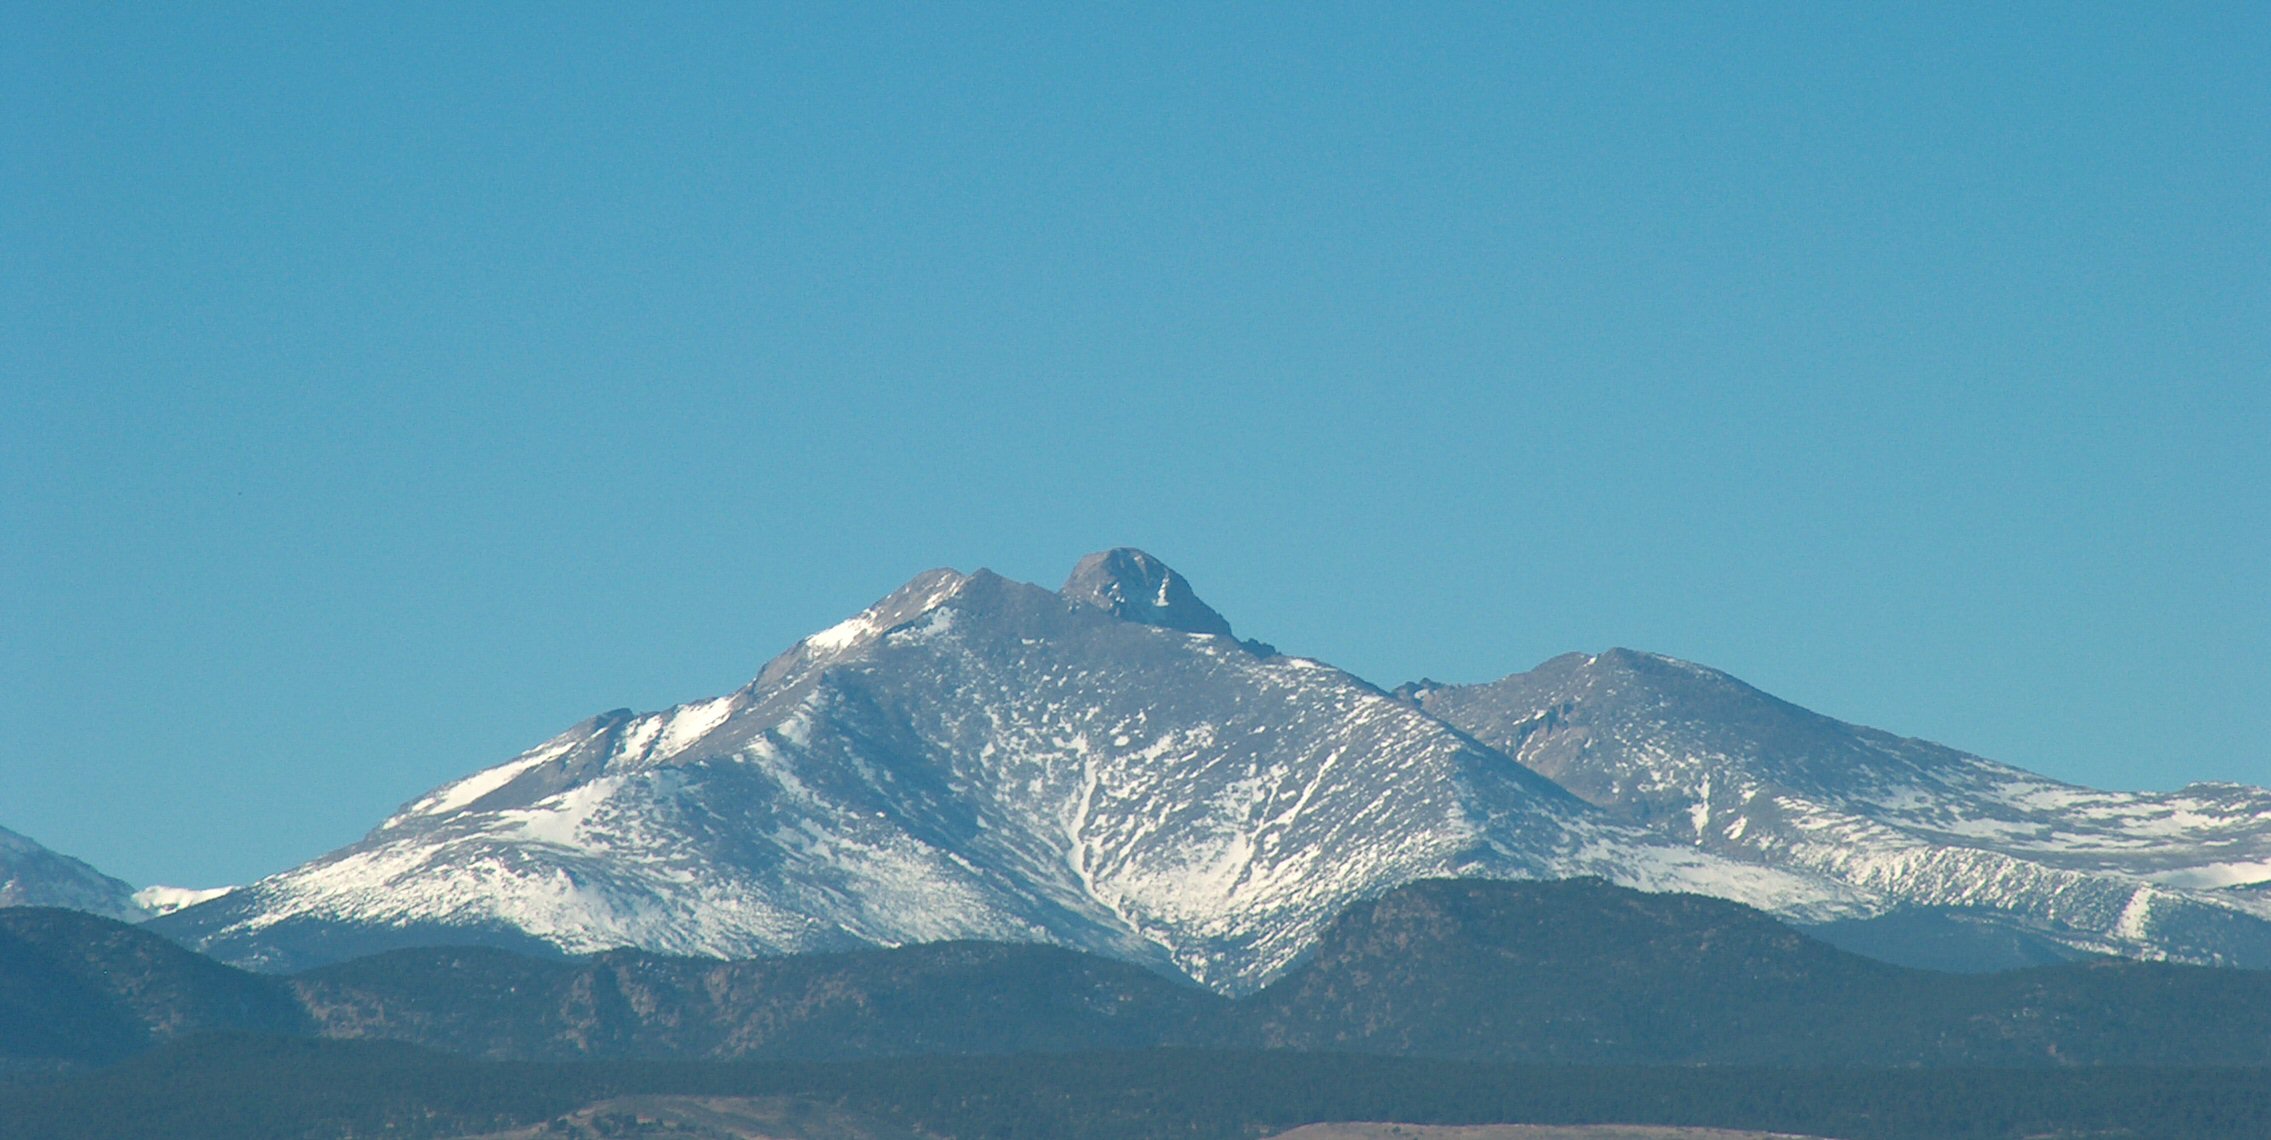 Longs Peak from Longmont CO. image